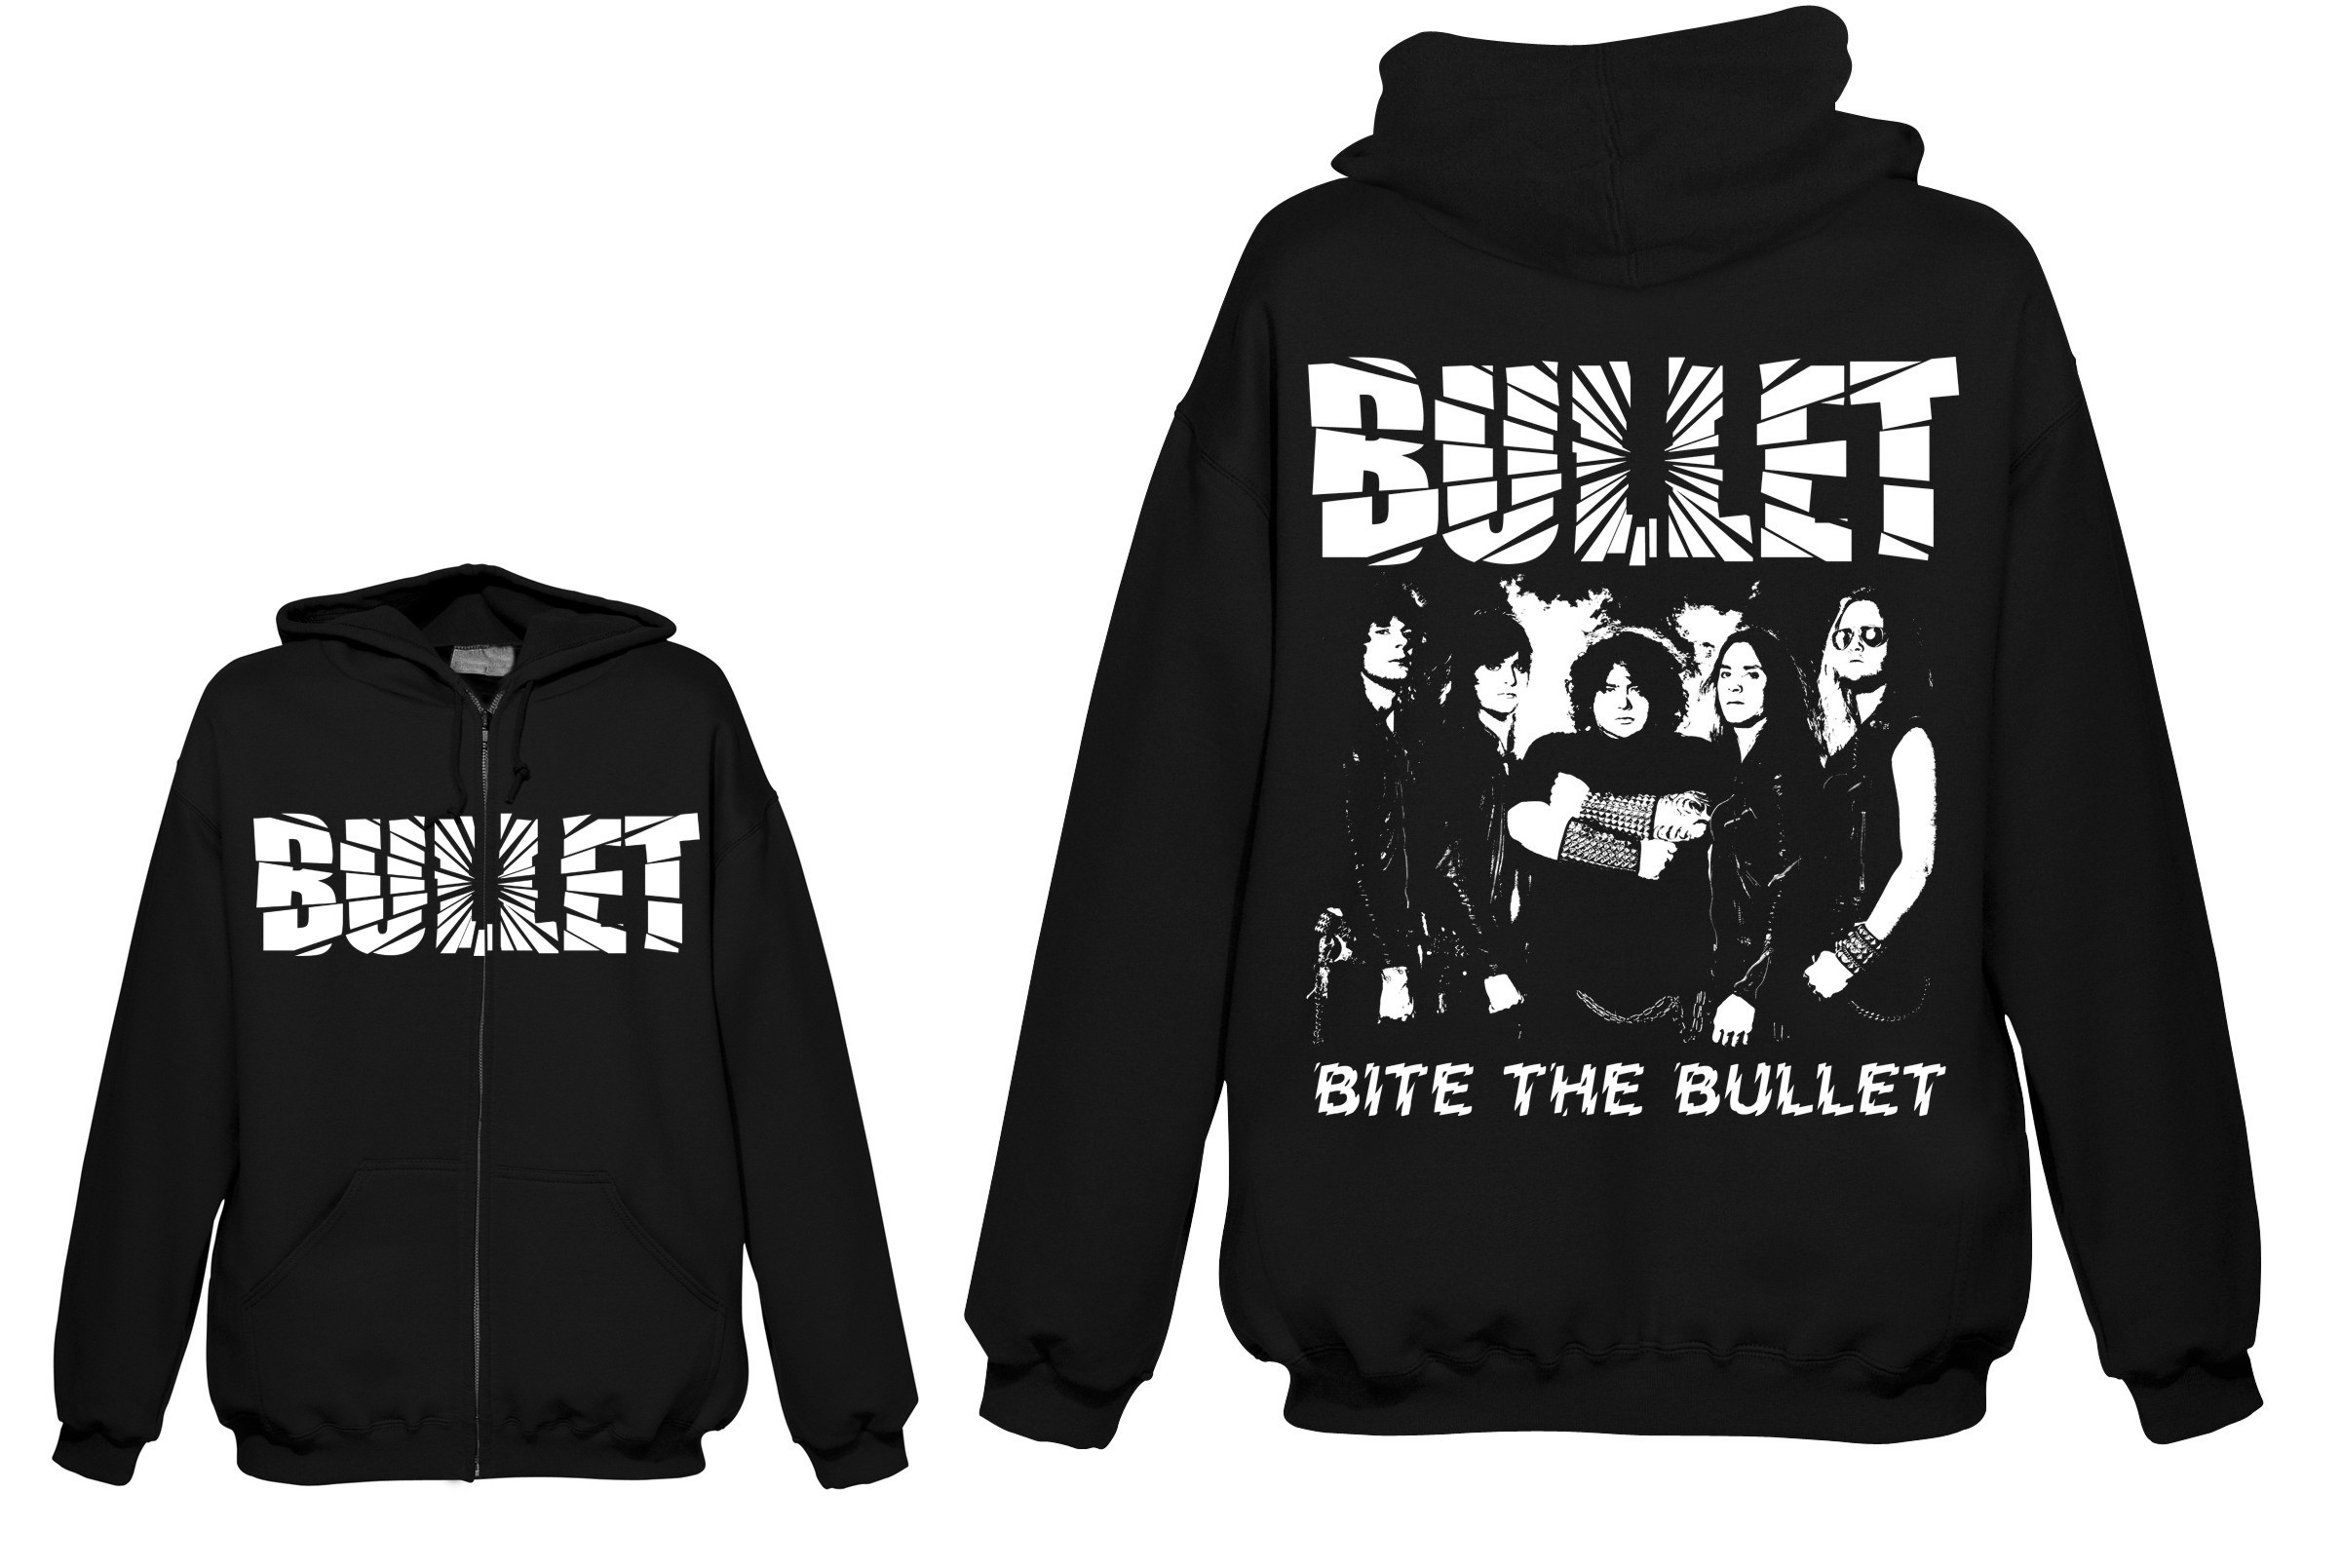 Bullet - Bite